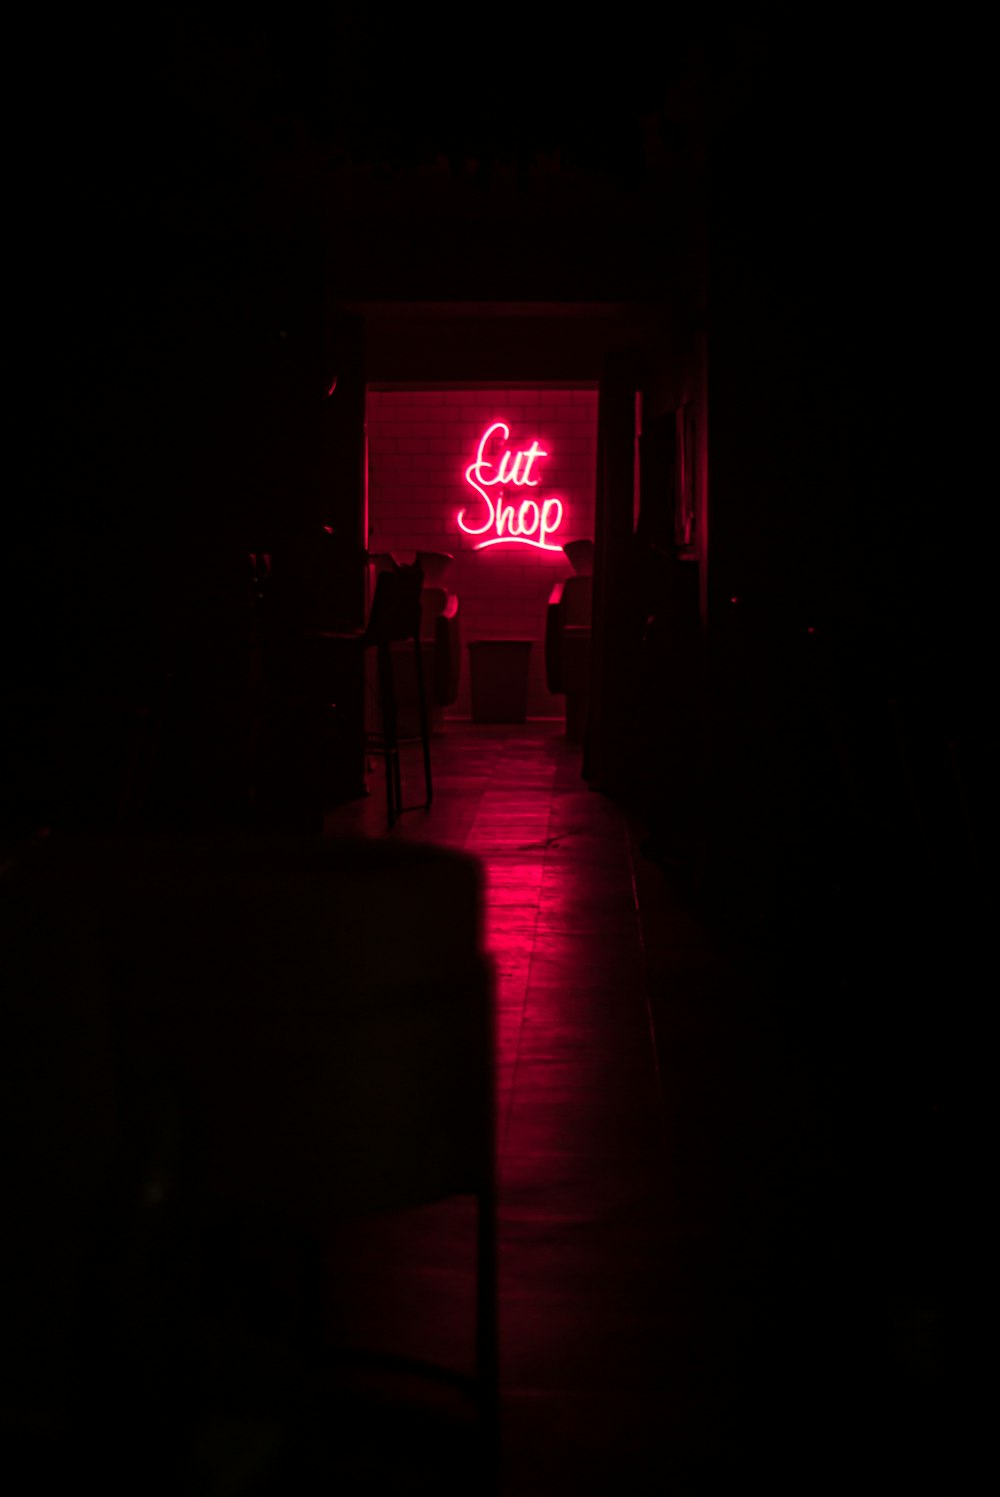 Un couloir sombre avec une enseigne au néon qui dit Cut Shop